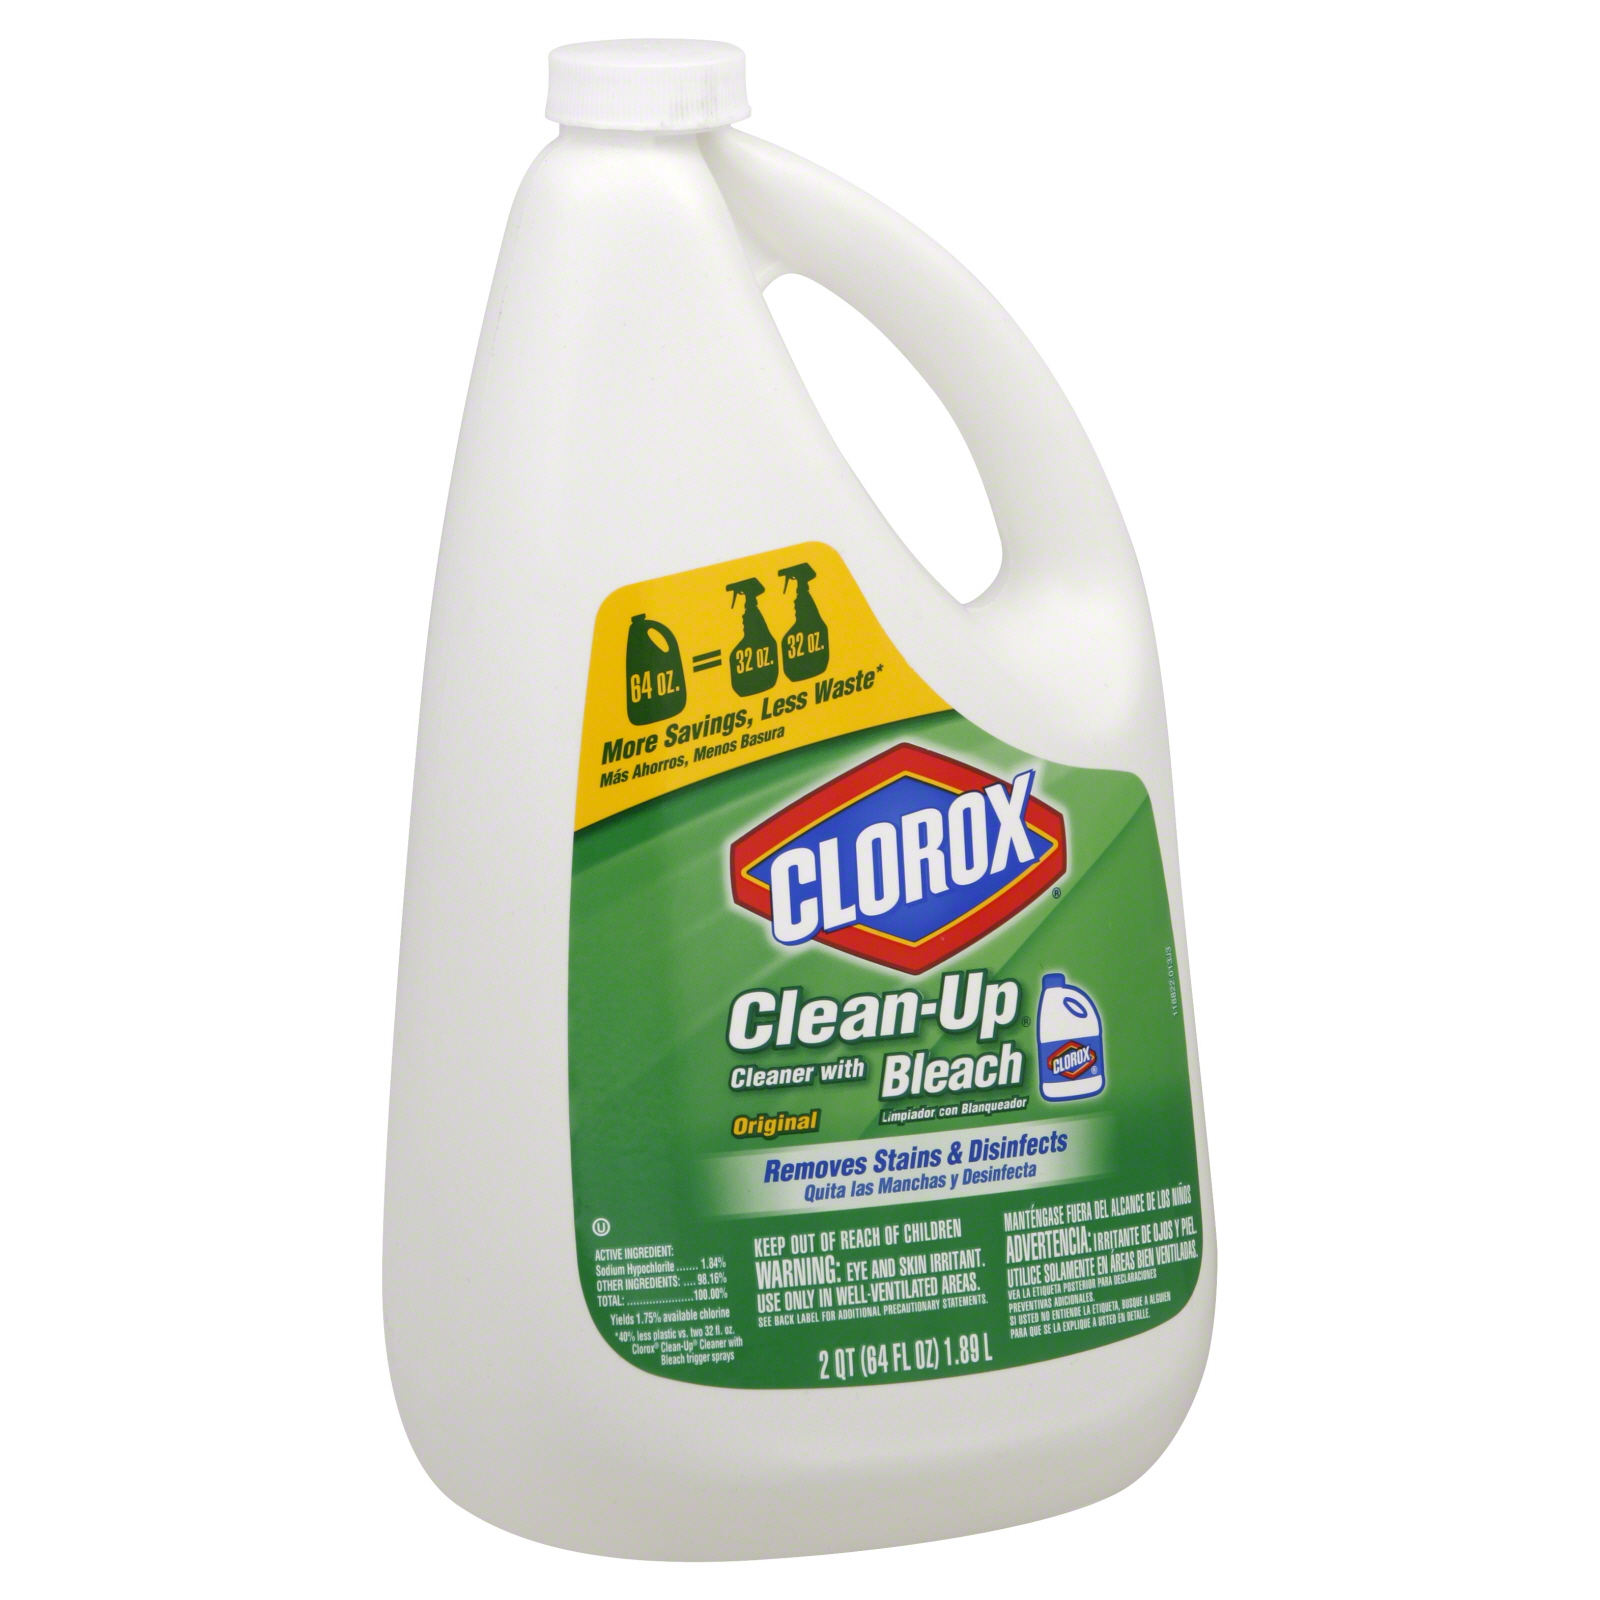 Clorox Clean-Up Cleaner with Bleach, 64 fl oz (2 qt) 1.89 lt